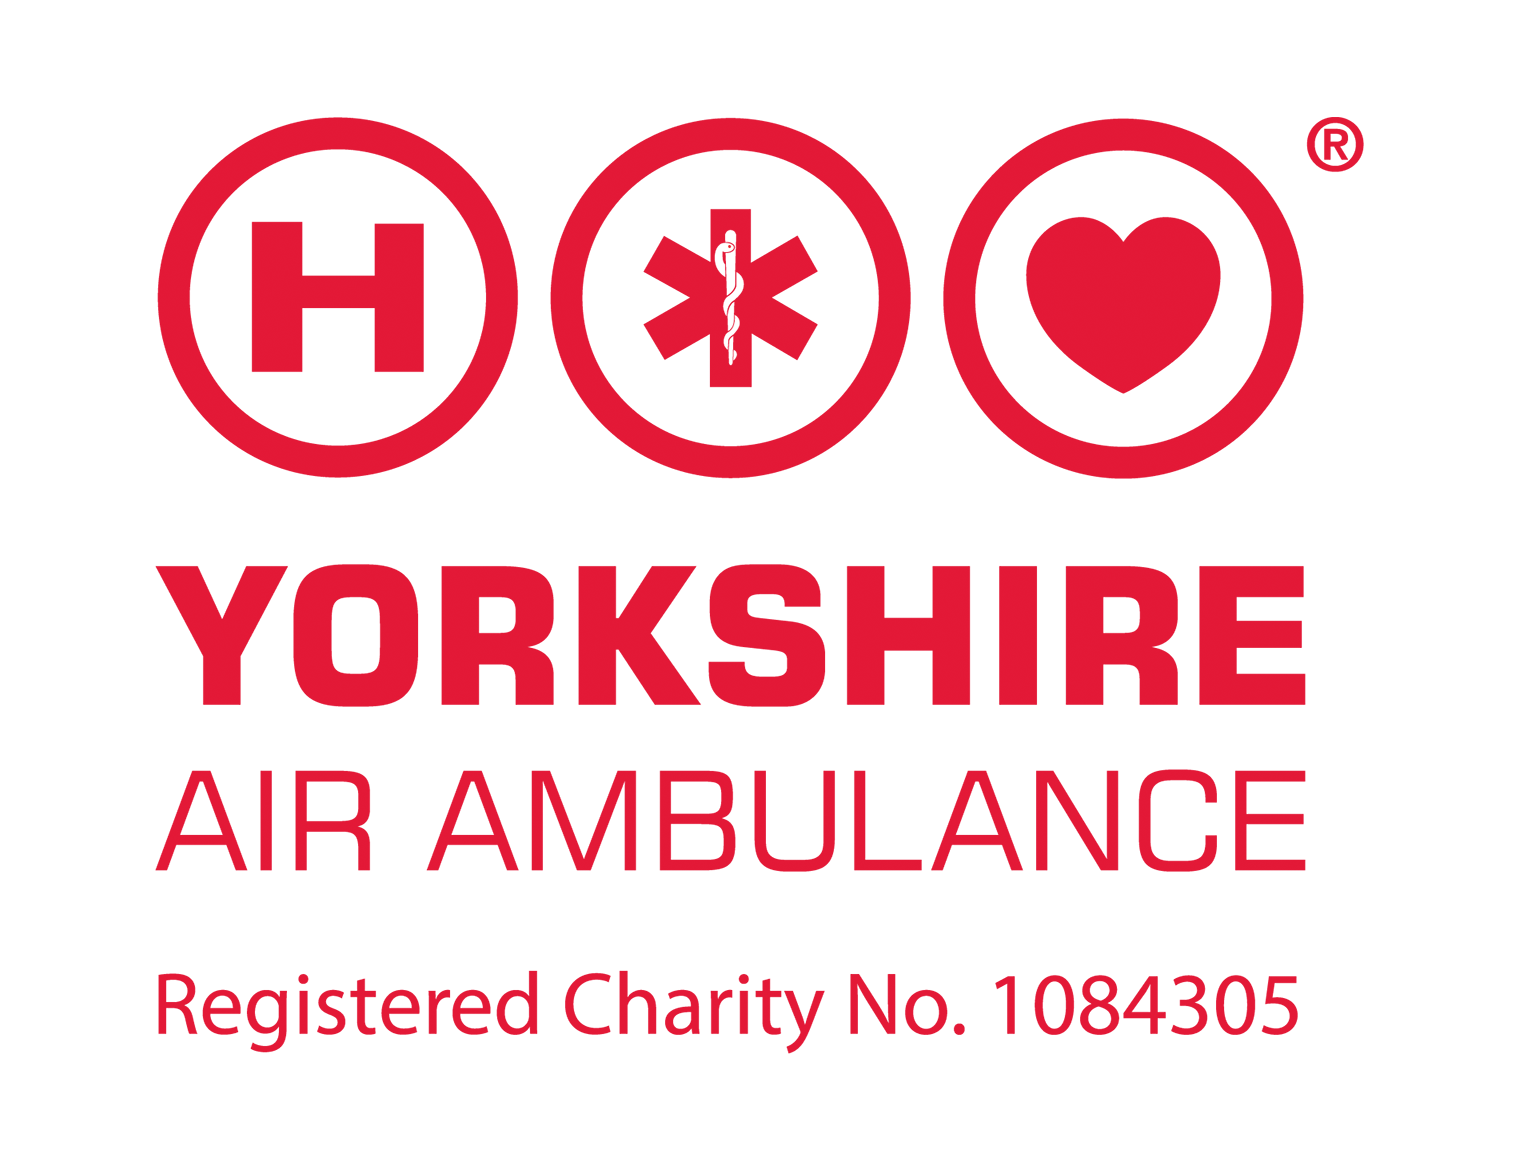 Yorkshire Air Ambulane